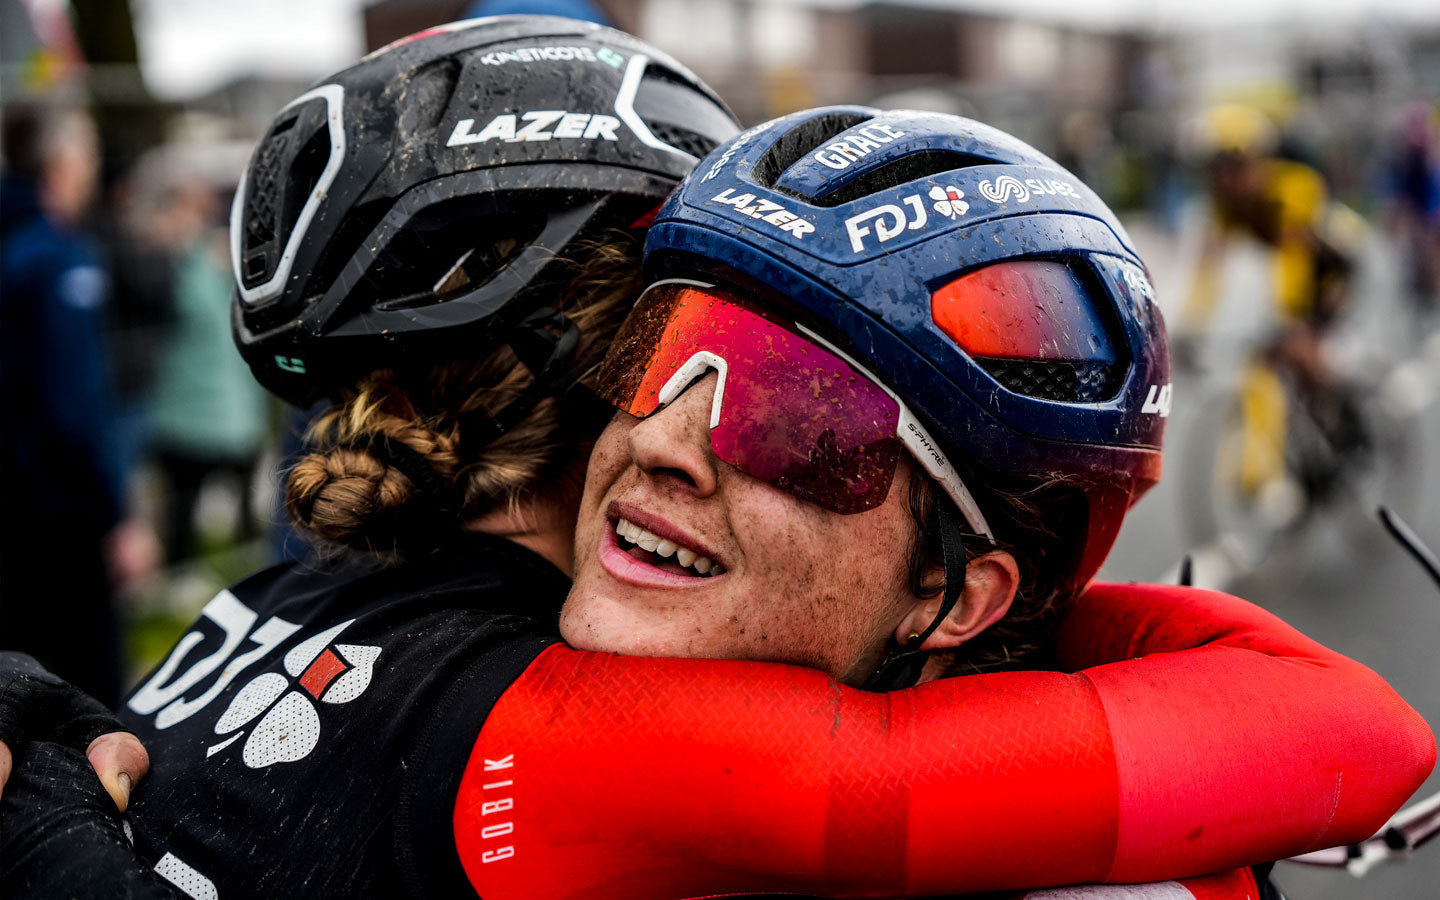 Dos ciclistas del equipo FDJ Suez se abrazan una vez terminada la Amstel Gold Race. Sus equipaciones y rostros cubiertos de barro y la sonrisa de una de ellas hacen gala de la dureza de la prueba y la satisfacción del ciclista que la logra.